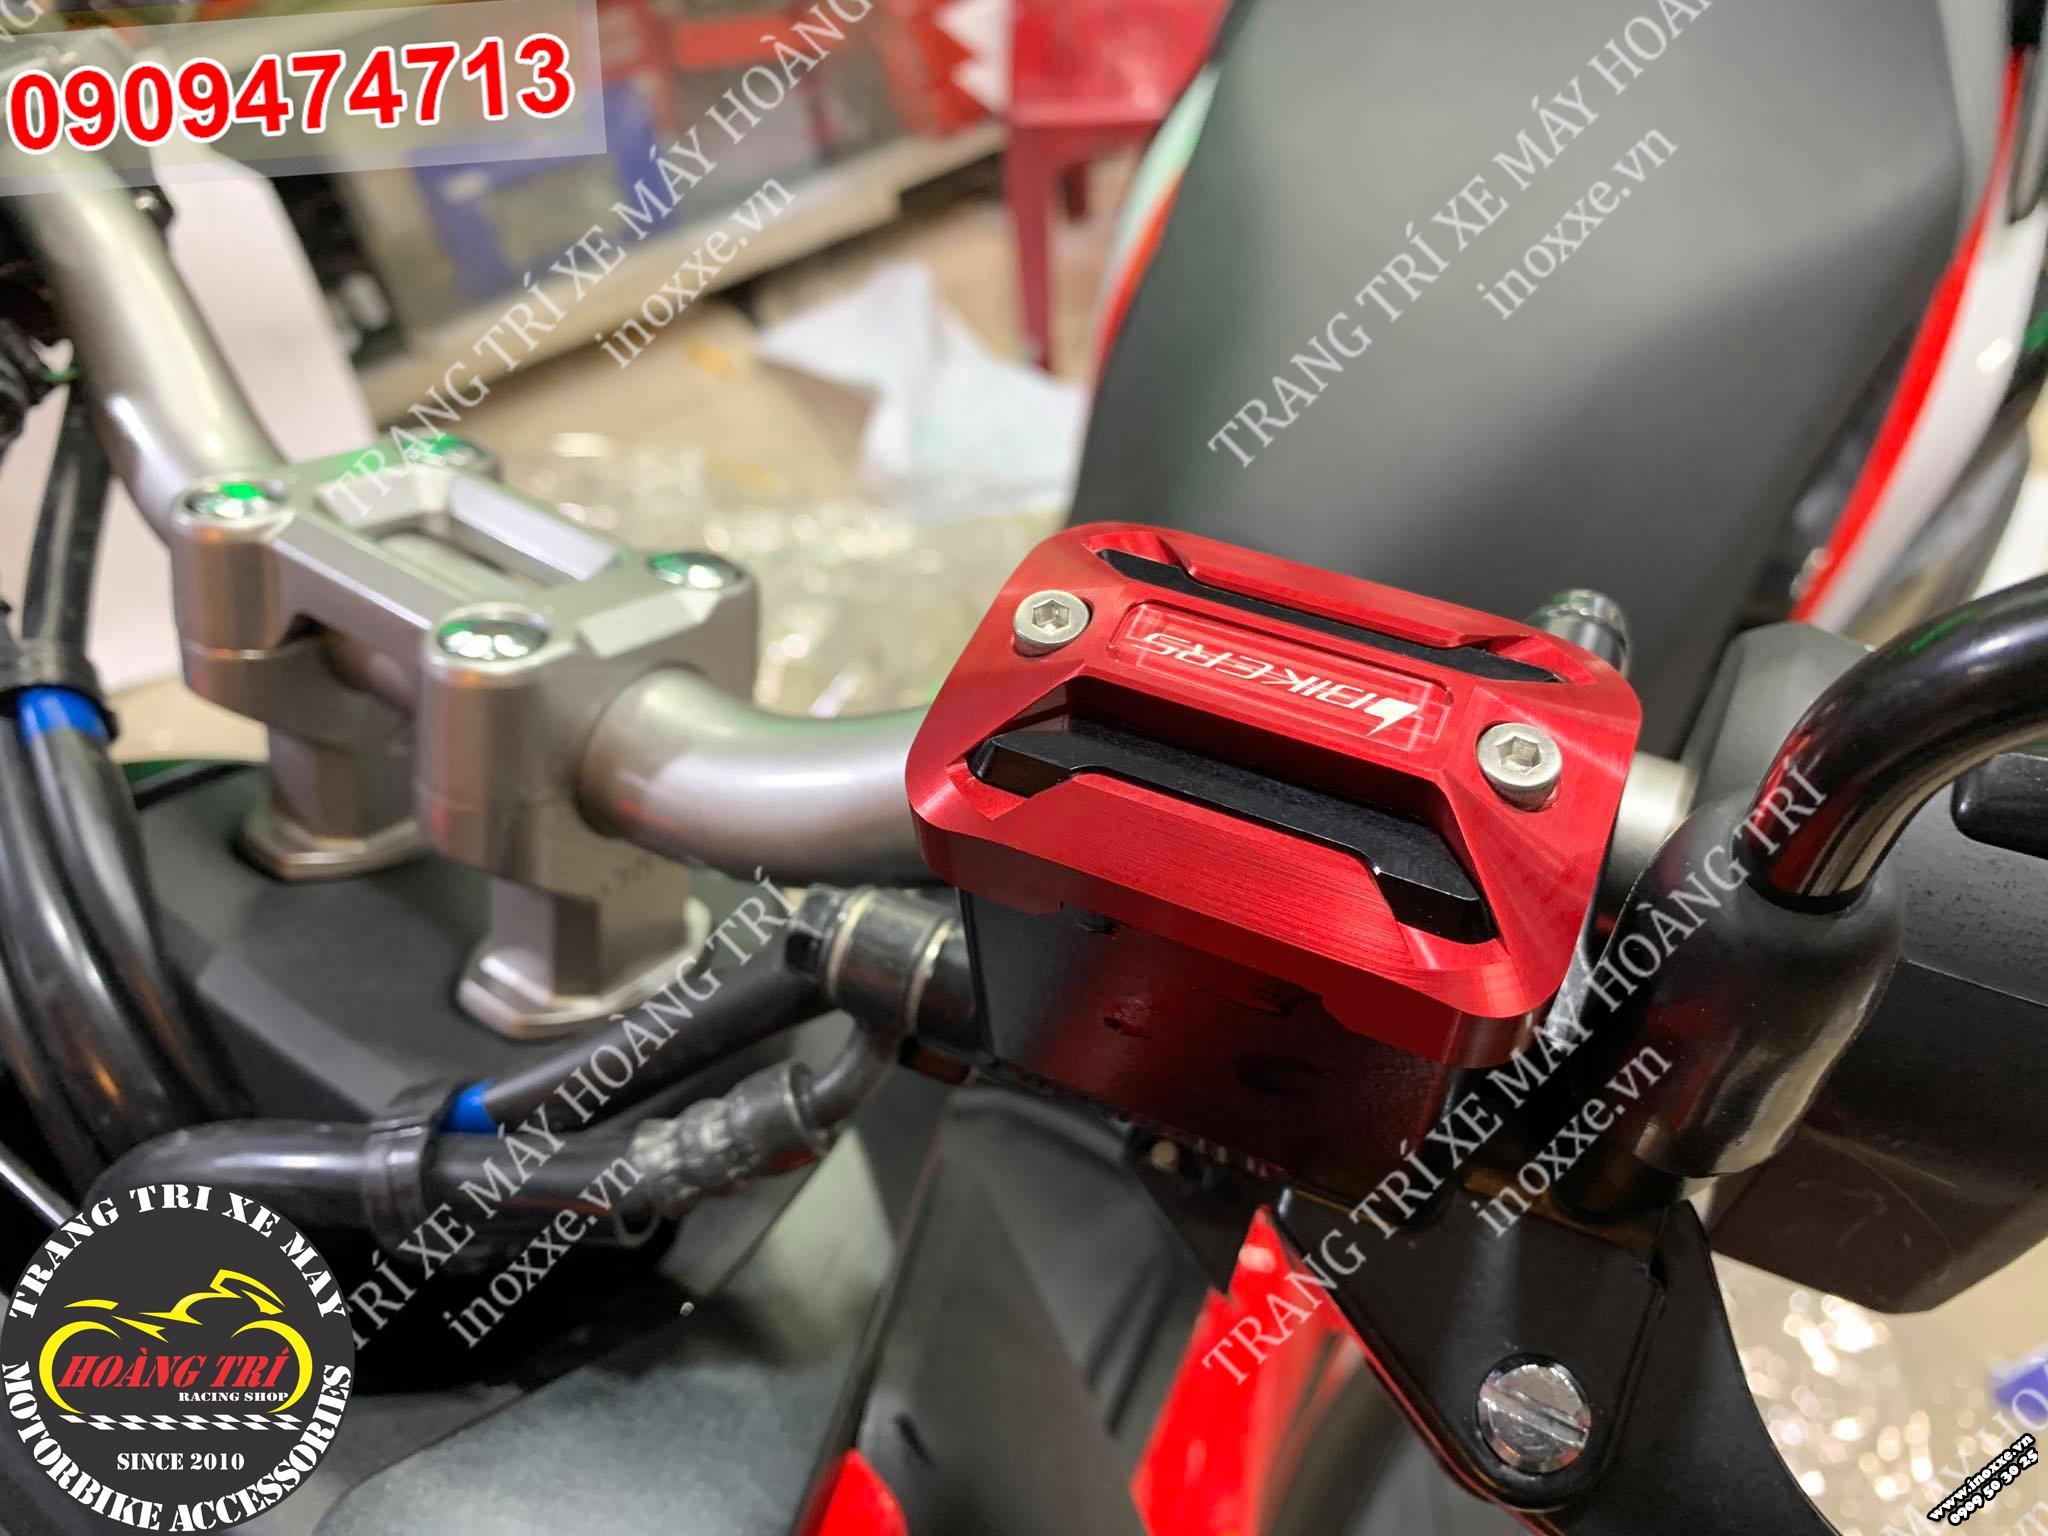 Nắp dầu Biker màu đỏ lắp cho ADV 150